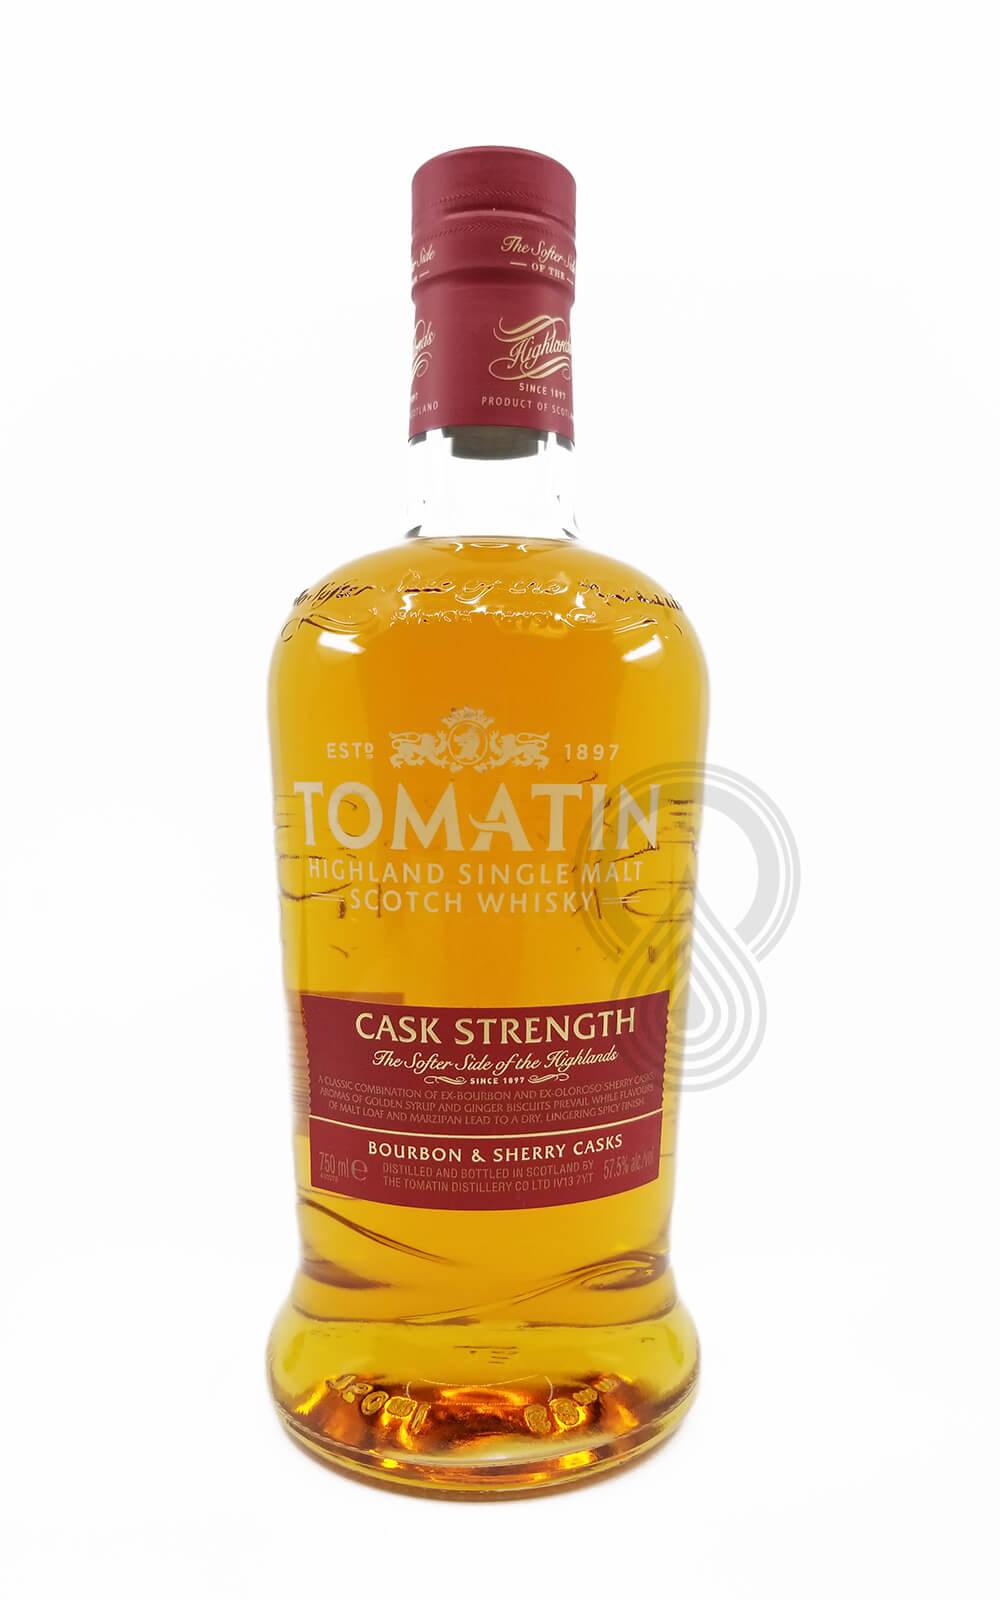 Tomatin Cask Strength Single Malt Scotch